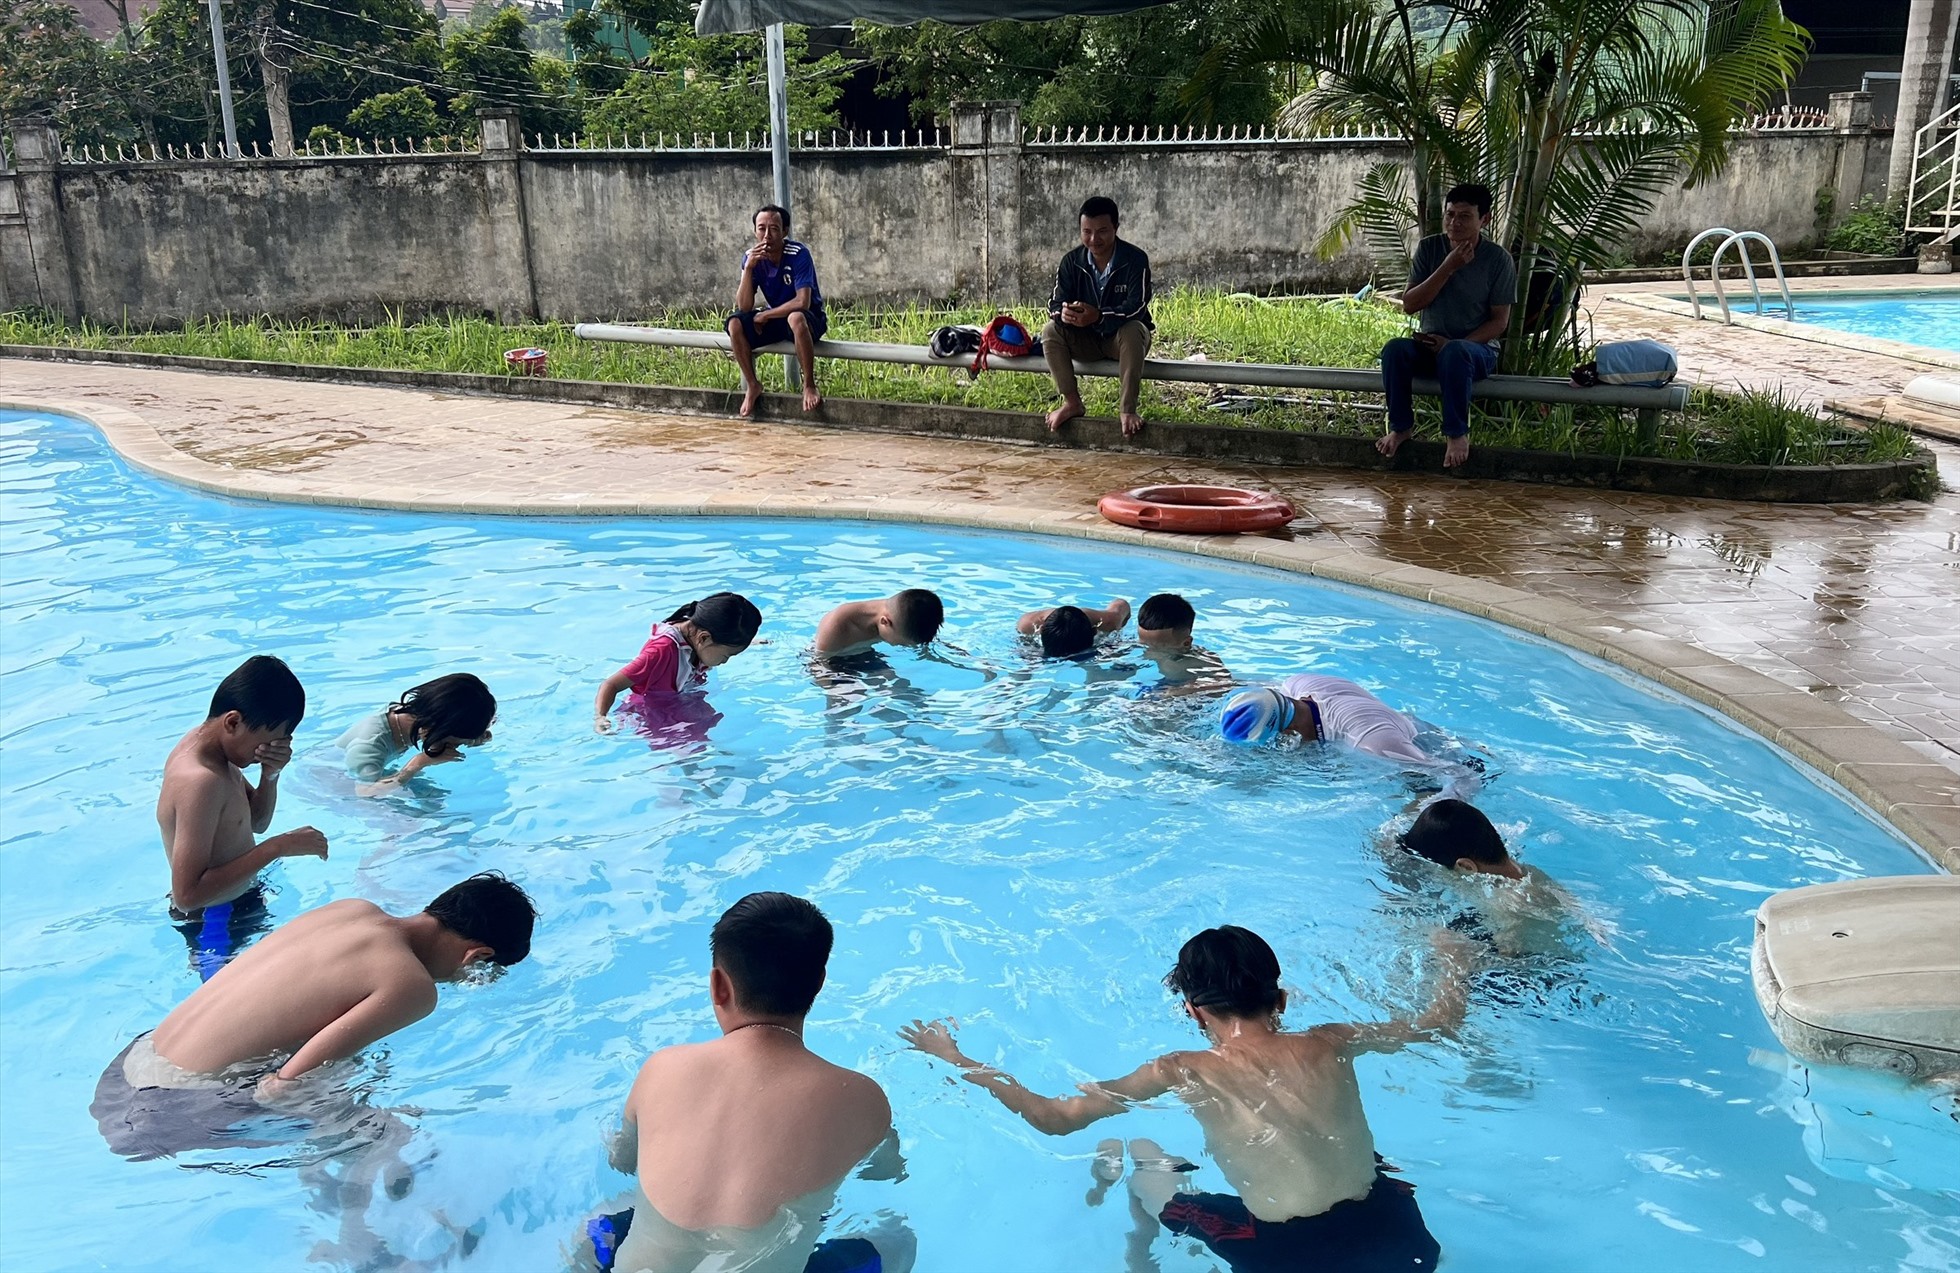 Kỹ năng bơi lội sẽ giúp các em nhỏ có khả năng phòng tránh các vụ tai nạn đuối nước. Ảnh: Lê Cung